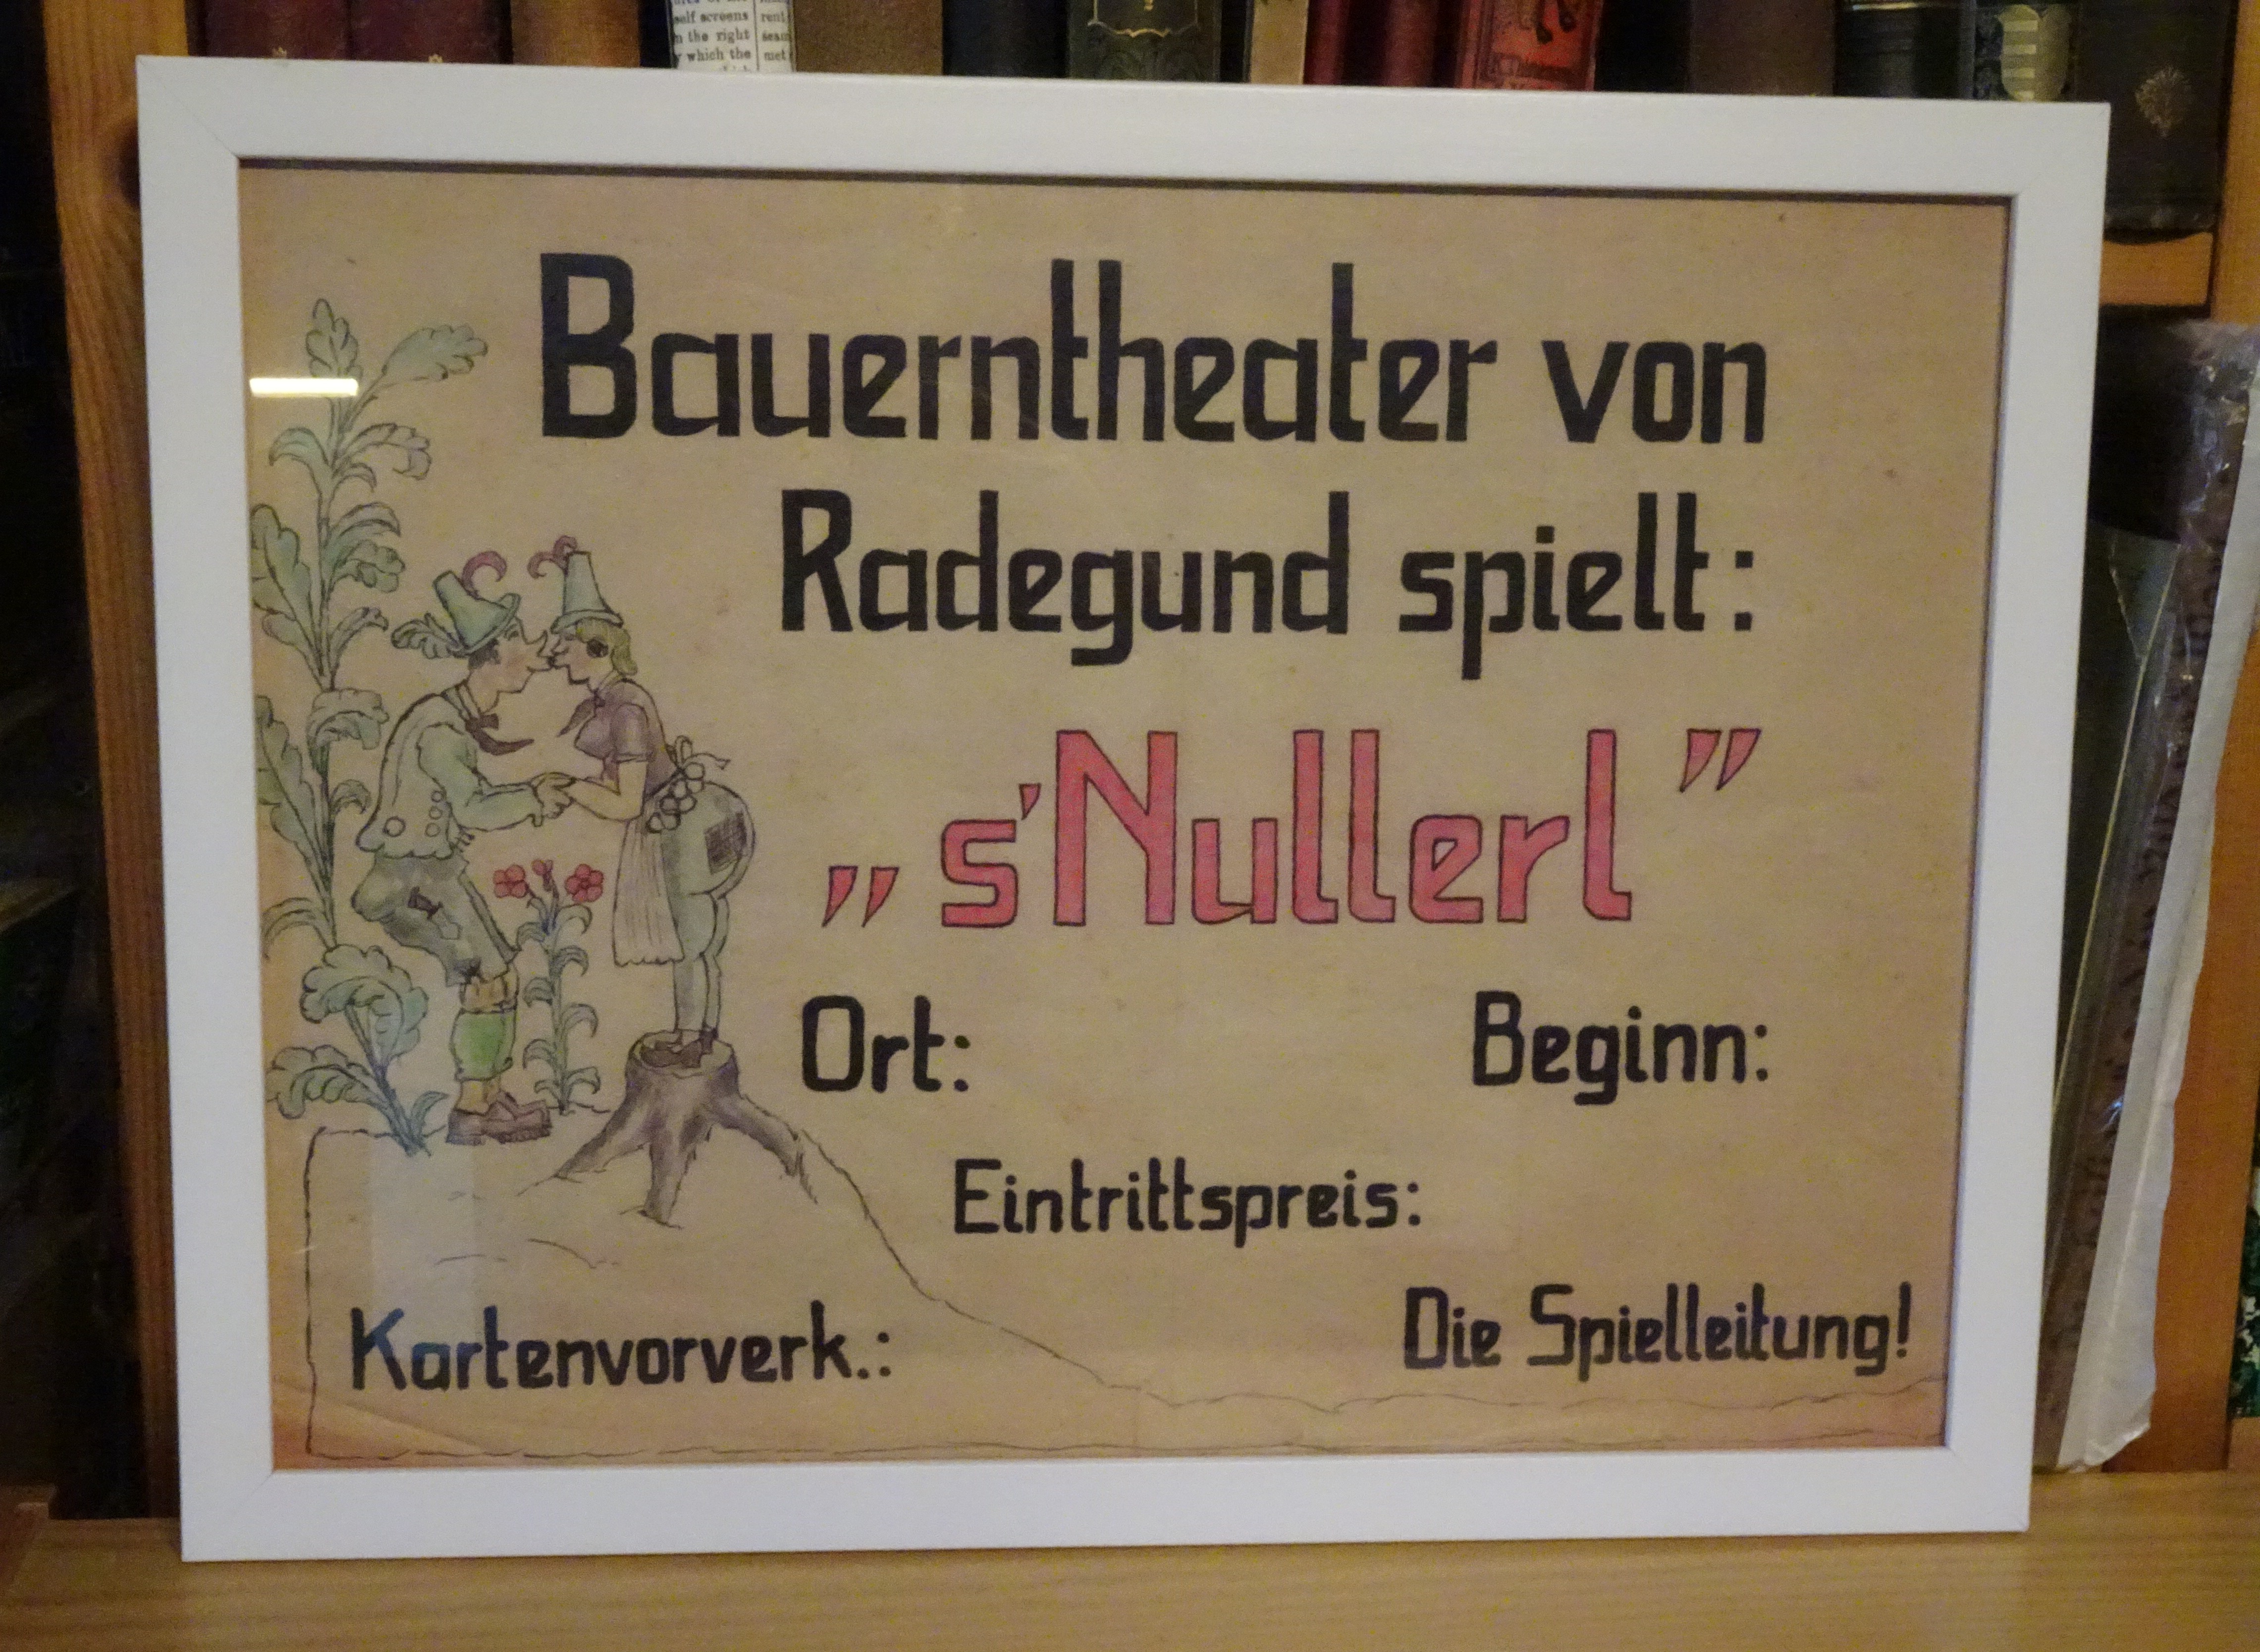 Radegunder Bauerntheater Plakat mit Rahmen